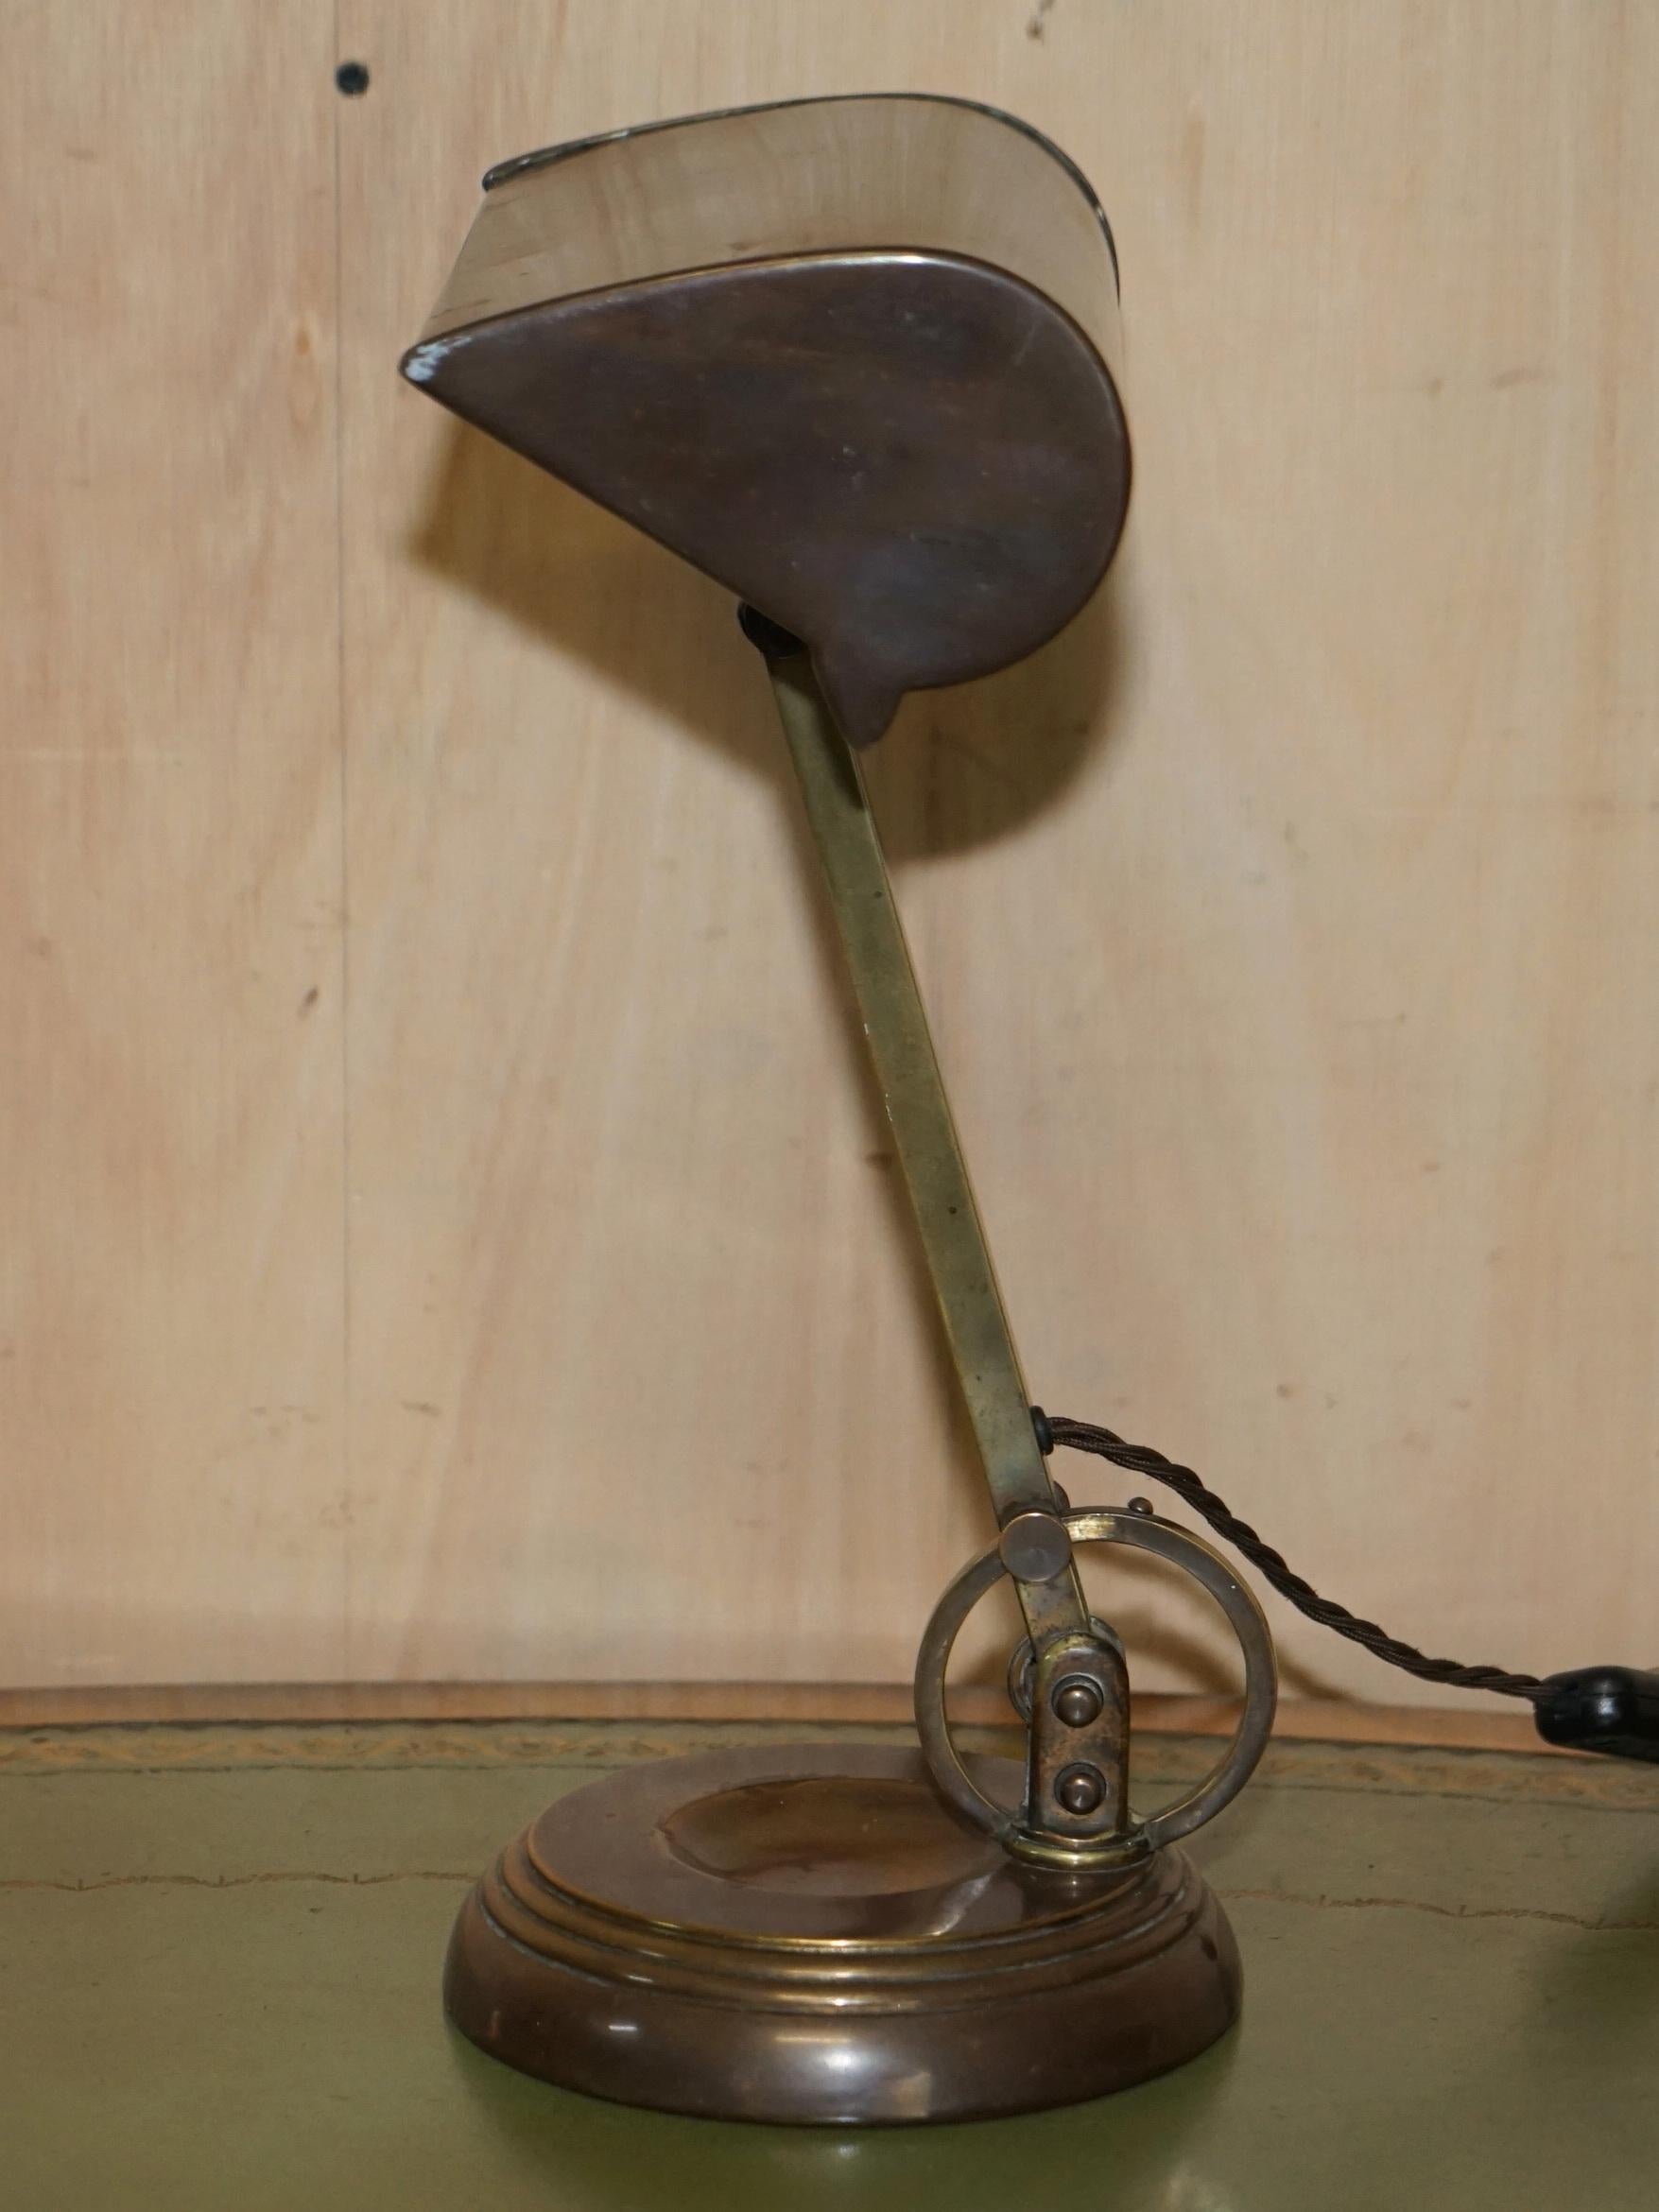 Nous avons le plaisir de vous proposer à la vente cette superbe lampe de banquier Art Déco en bronze, laiton et cuivre, datant de 1920, avec un seul point d'articulation. 

Une pièce très belle et décorative, la lampe a un réglage d'angle de style